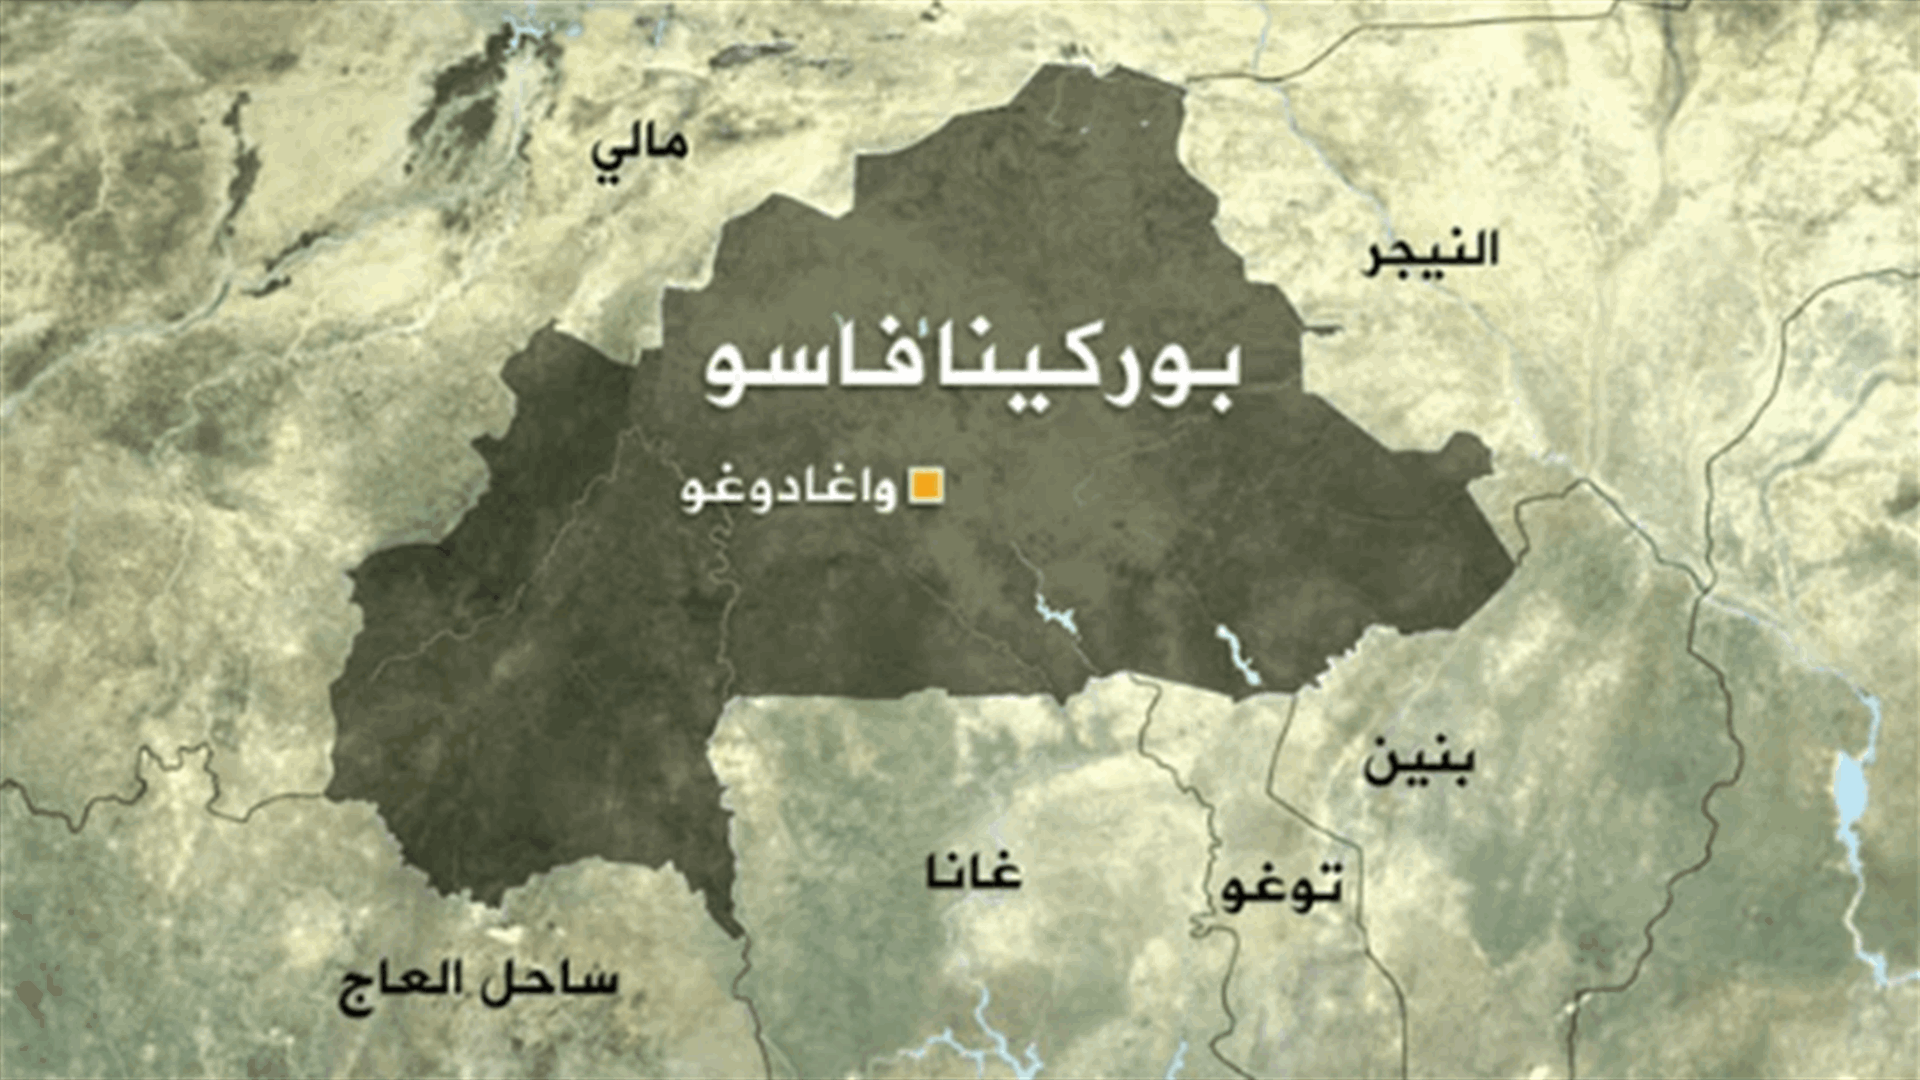 مقتل 11 مدنيا بينهم خمسة متعاونين مع الجيش في هجمات جهادية في بوركينا فاسو